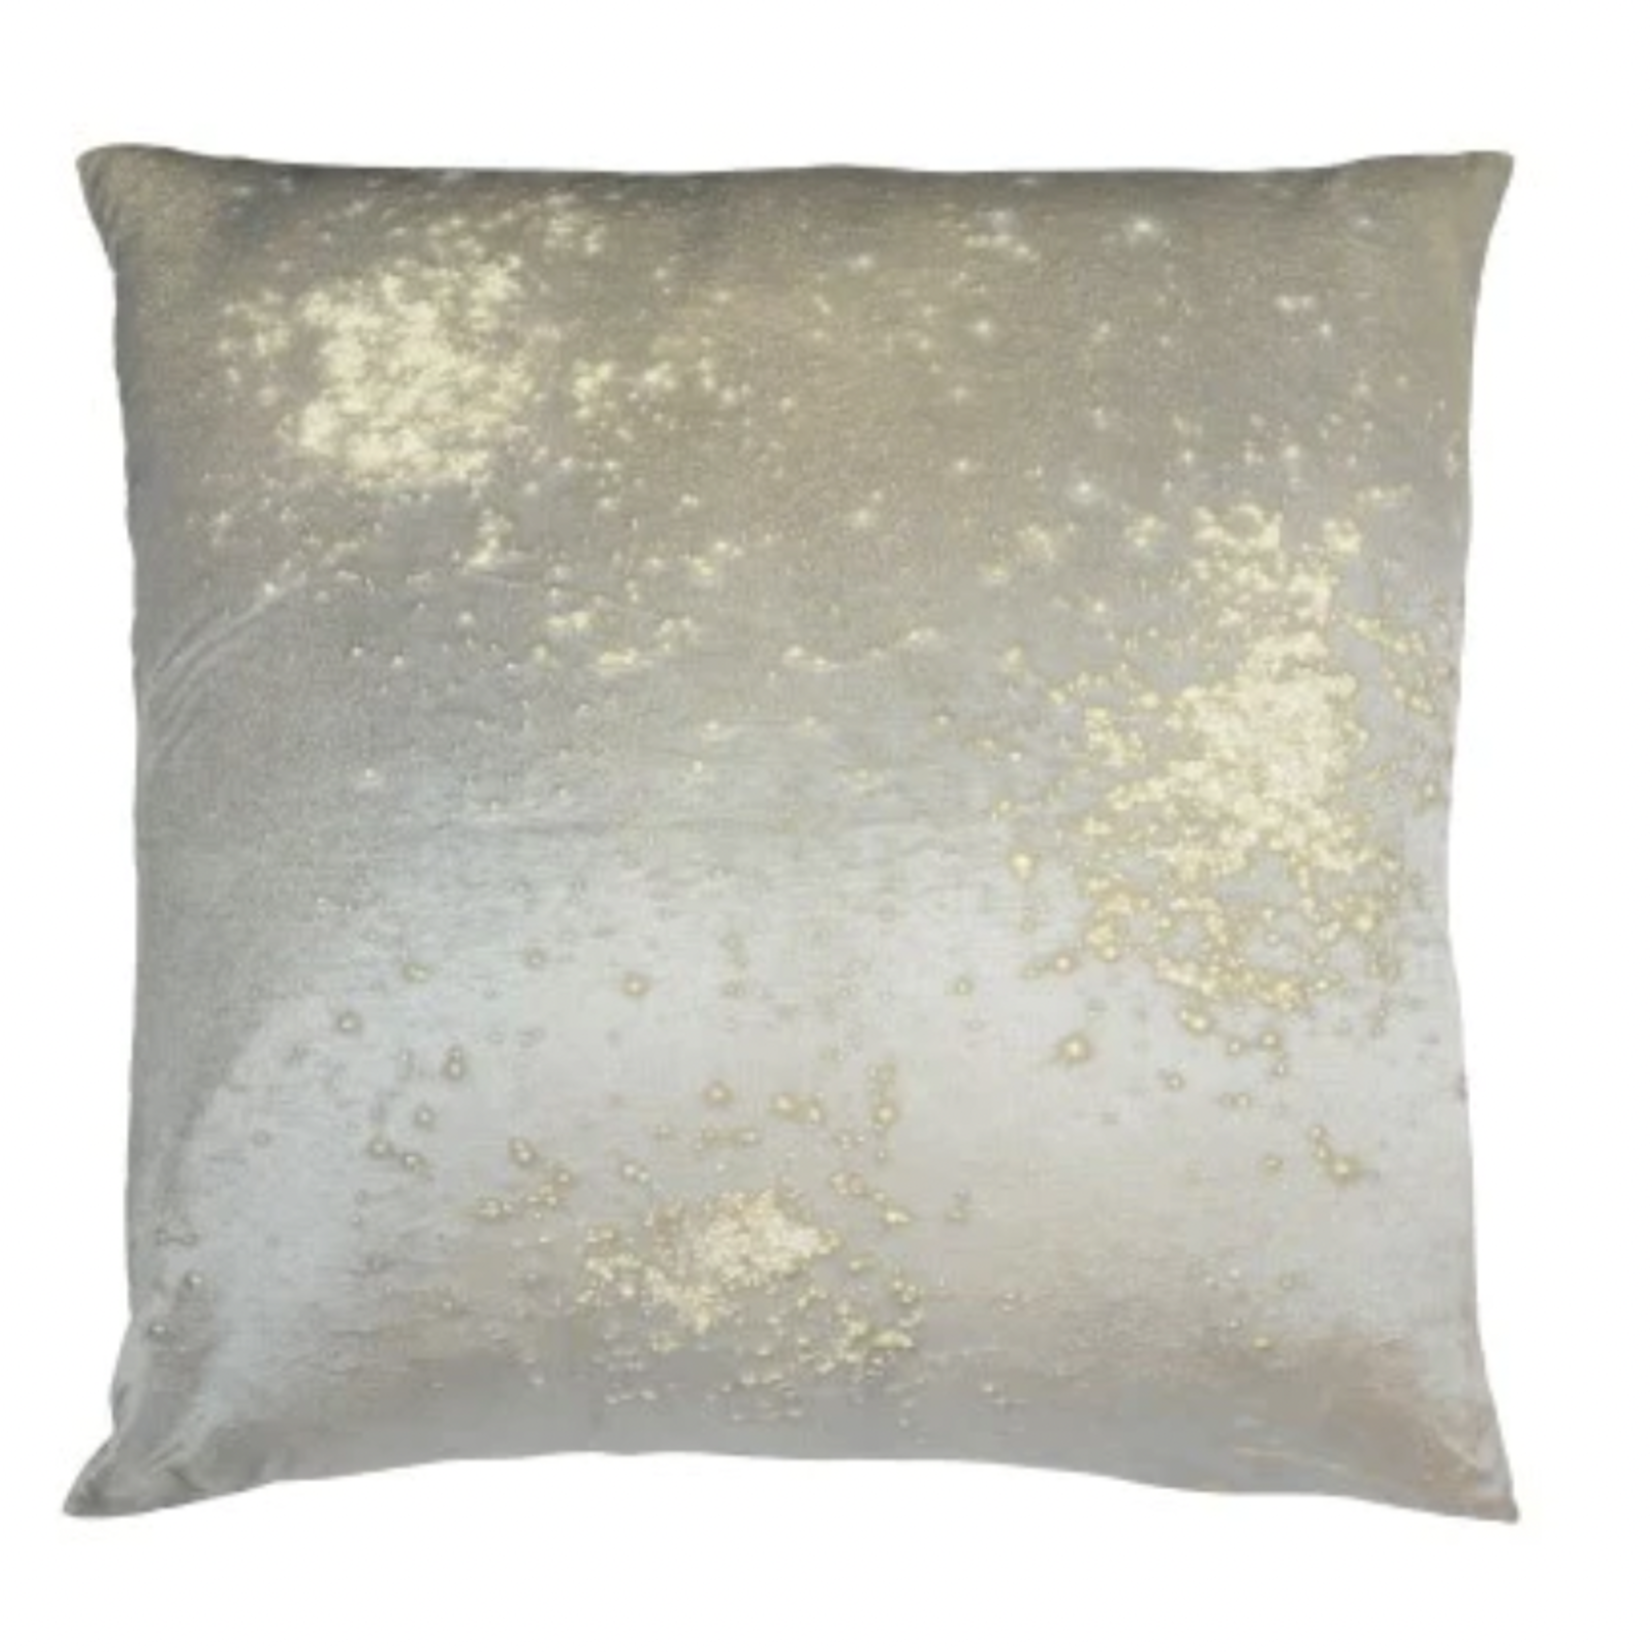 Mineral on Fuji Ivoire Velvet Pillow, 20x20